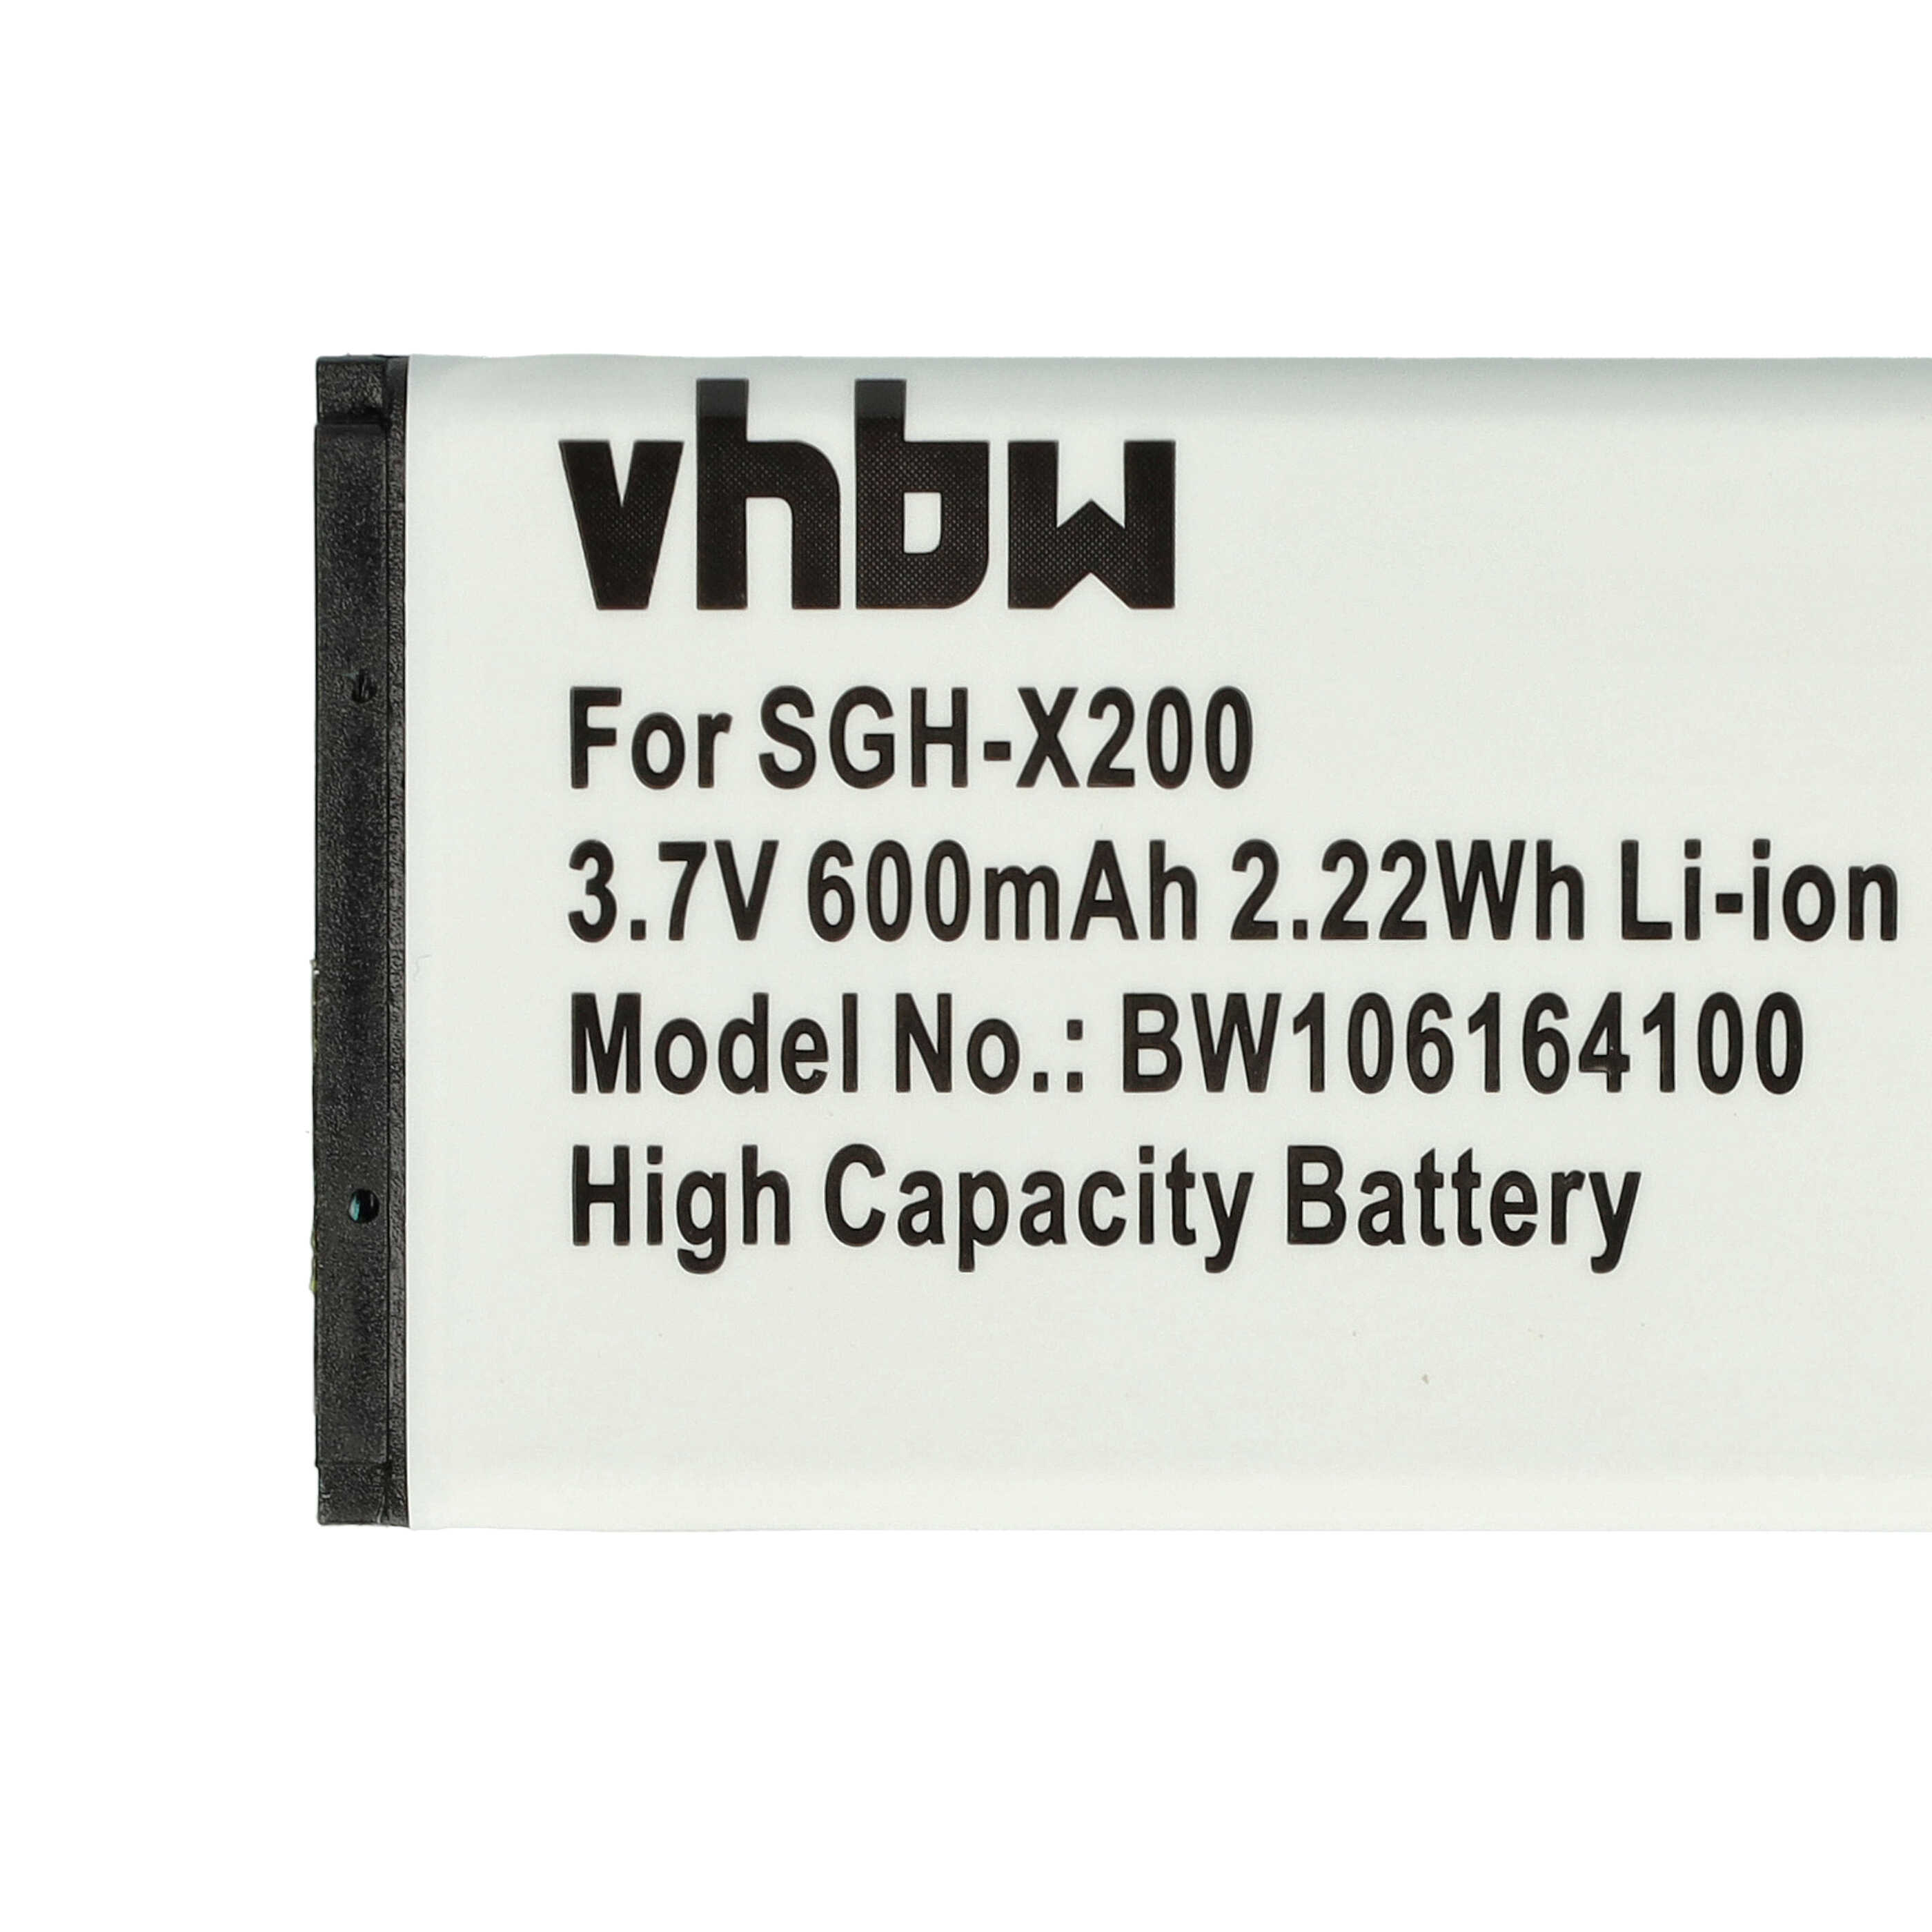 Akumulator bateria do telefonu smartfona zam. Samsung AB043446BC, AB043446BE - 600mAh, 3,7V, Li-Ion